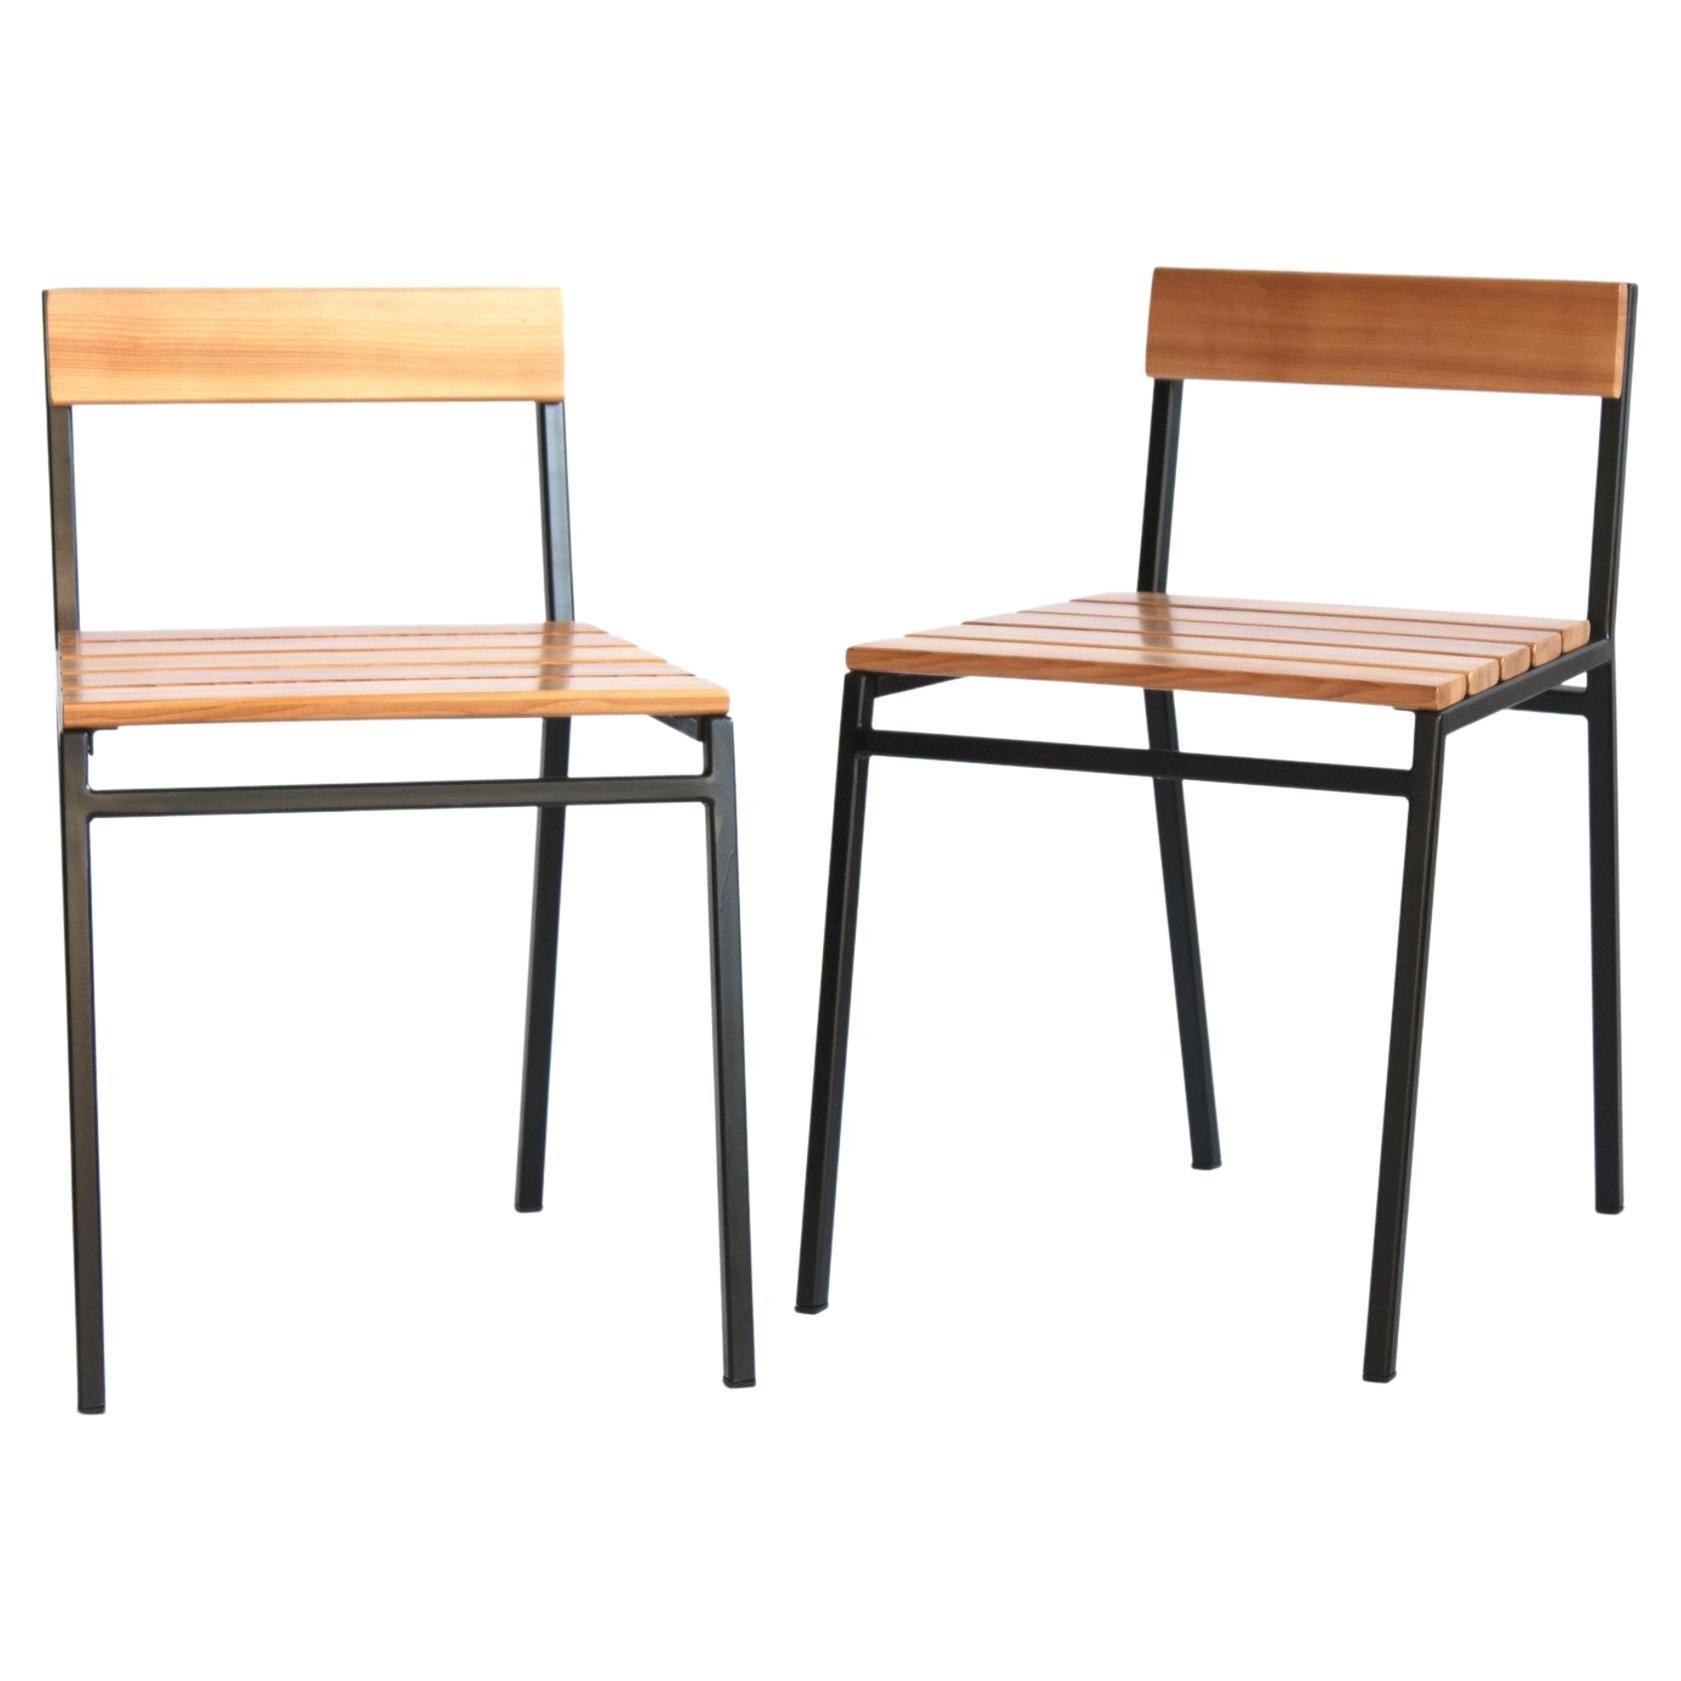 Slaat Dining Chair in Cedar and Steel, Indoor/Outdoor Design by Kln Studio For Sale